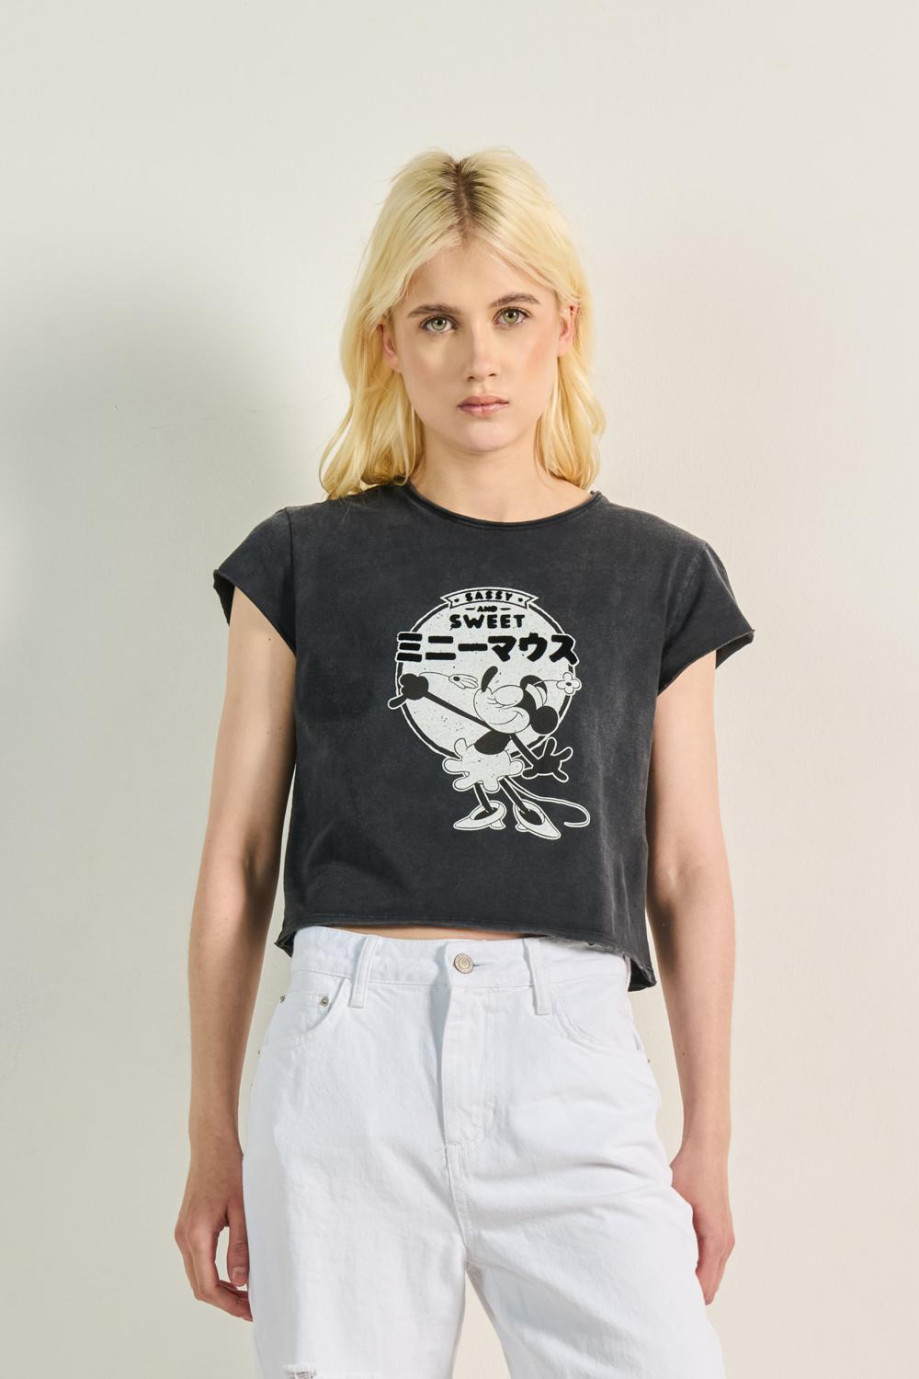 Camiseta negra crop top con diseño de Minnie y manga corta